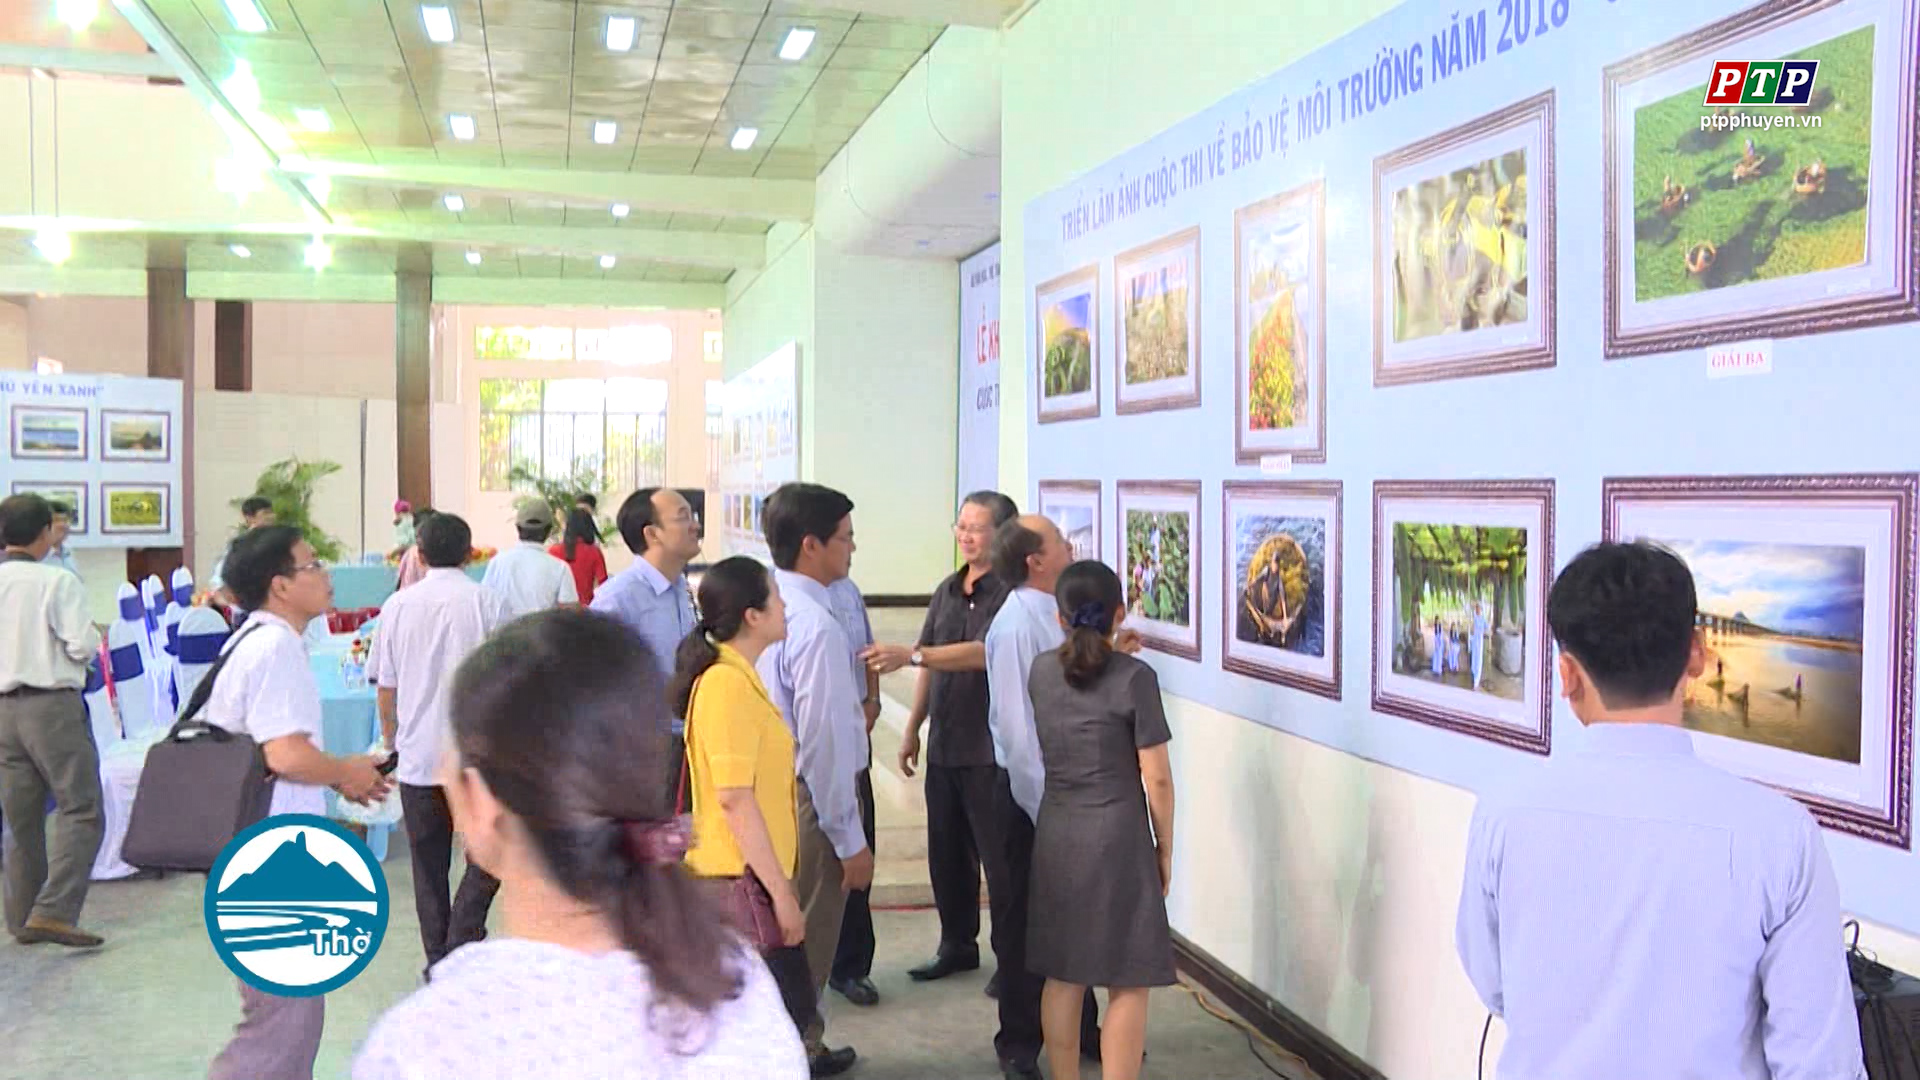 Triễn lãm ảnh Bảo vệ môi trường năm 2018 “Phú Yên Xanh”